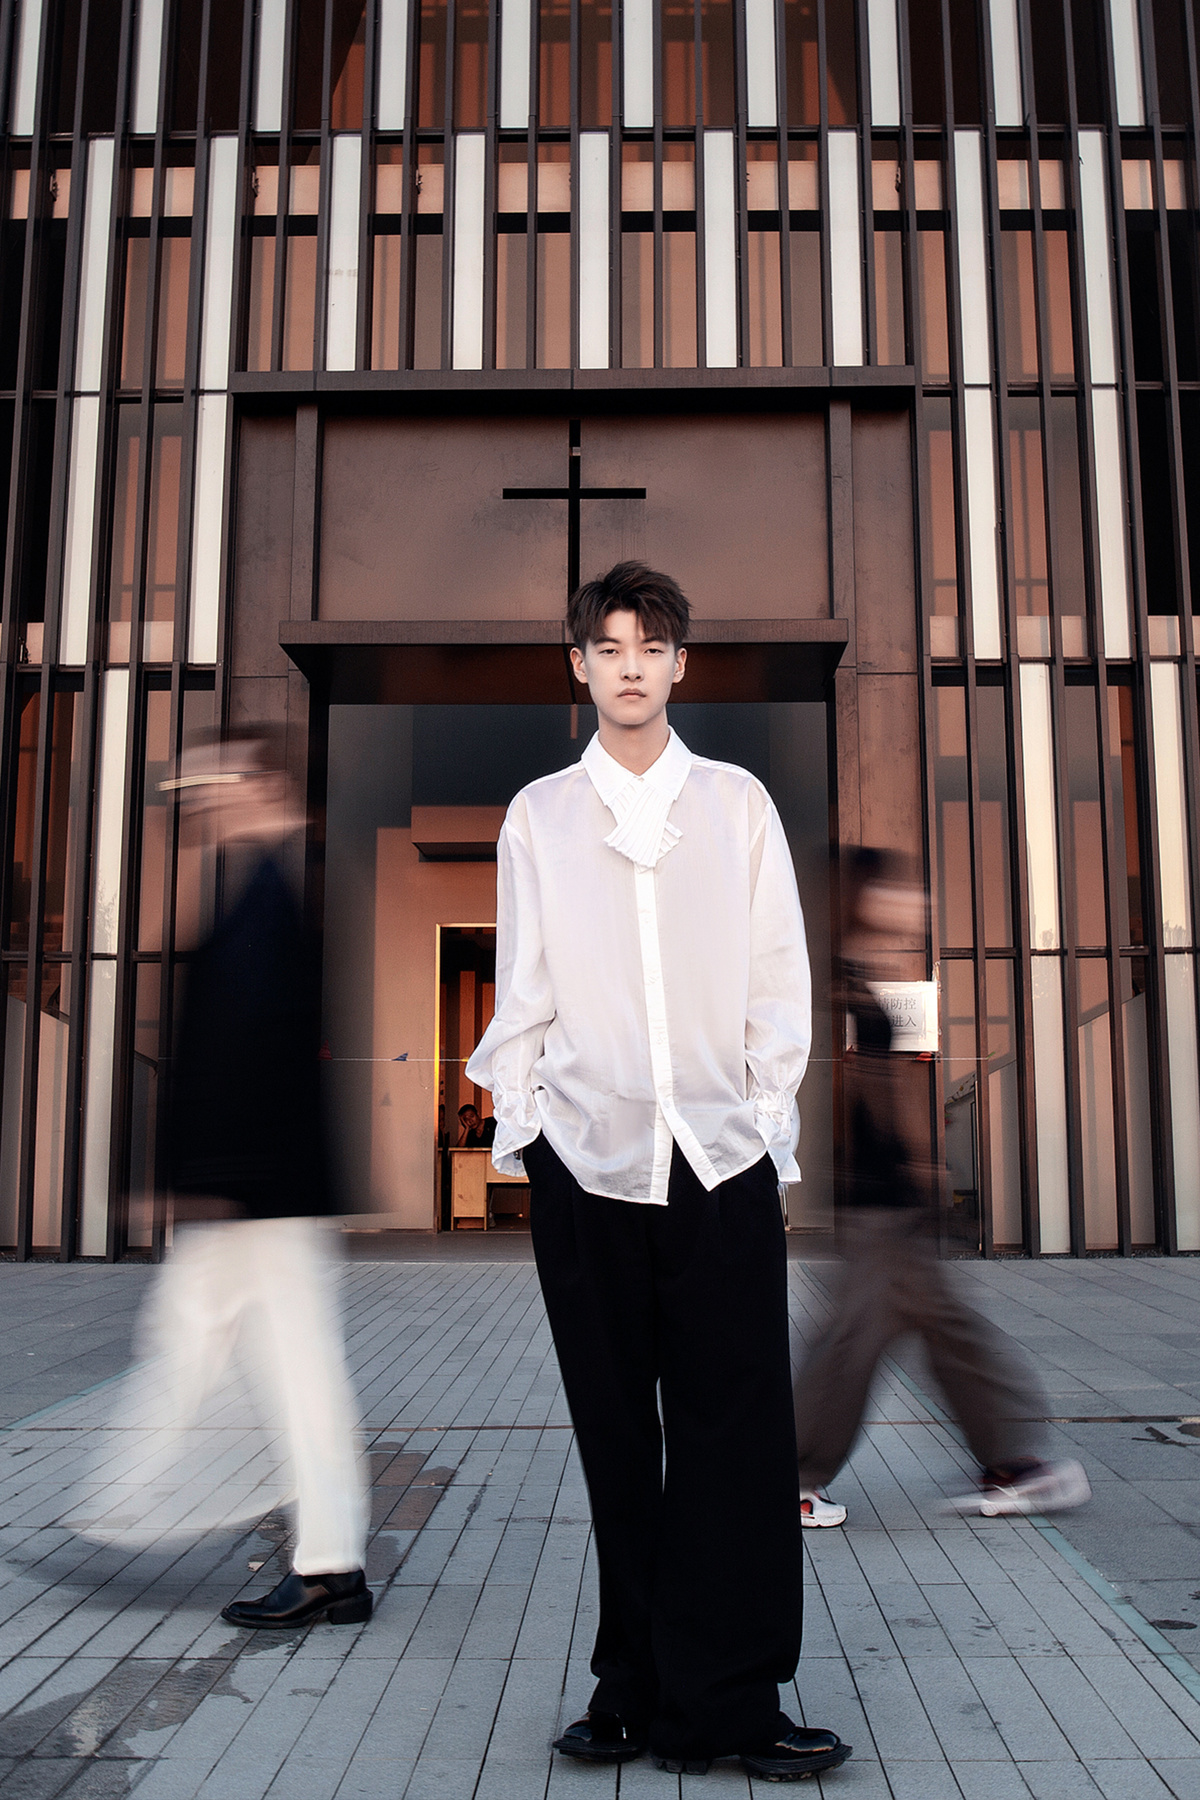 一个穿着白衬衫、打着黑领带的年轻人站在一栋楼前的人行道上